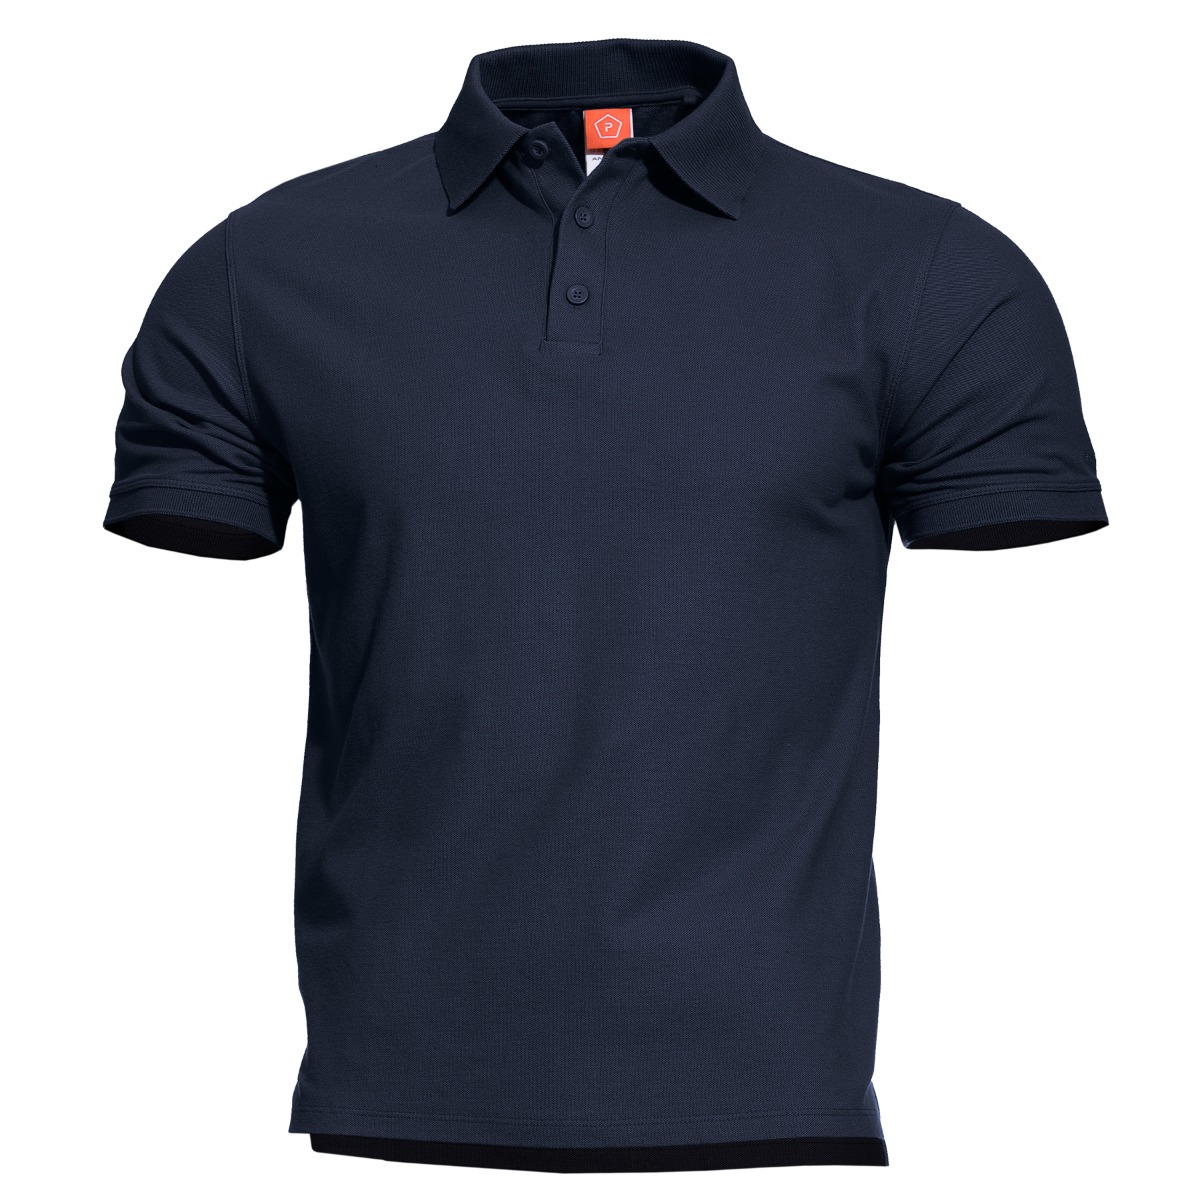 E-shop Pentagon ANIKETOS POLO tričko - navy blue